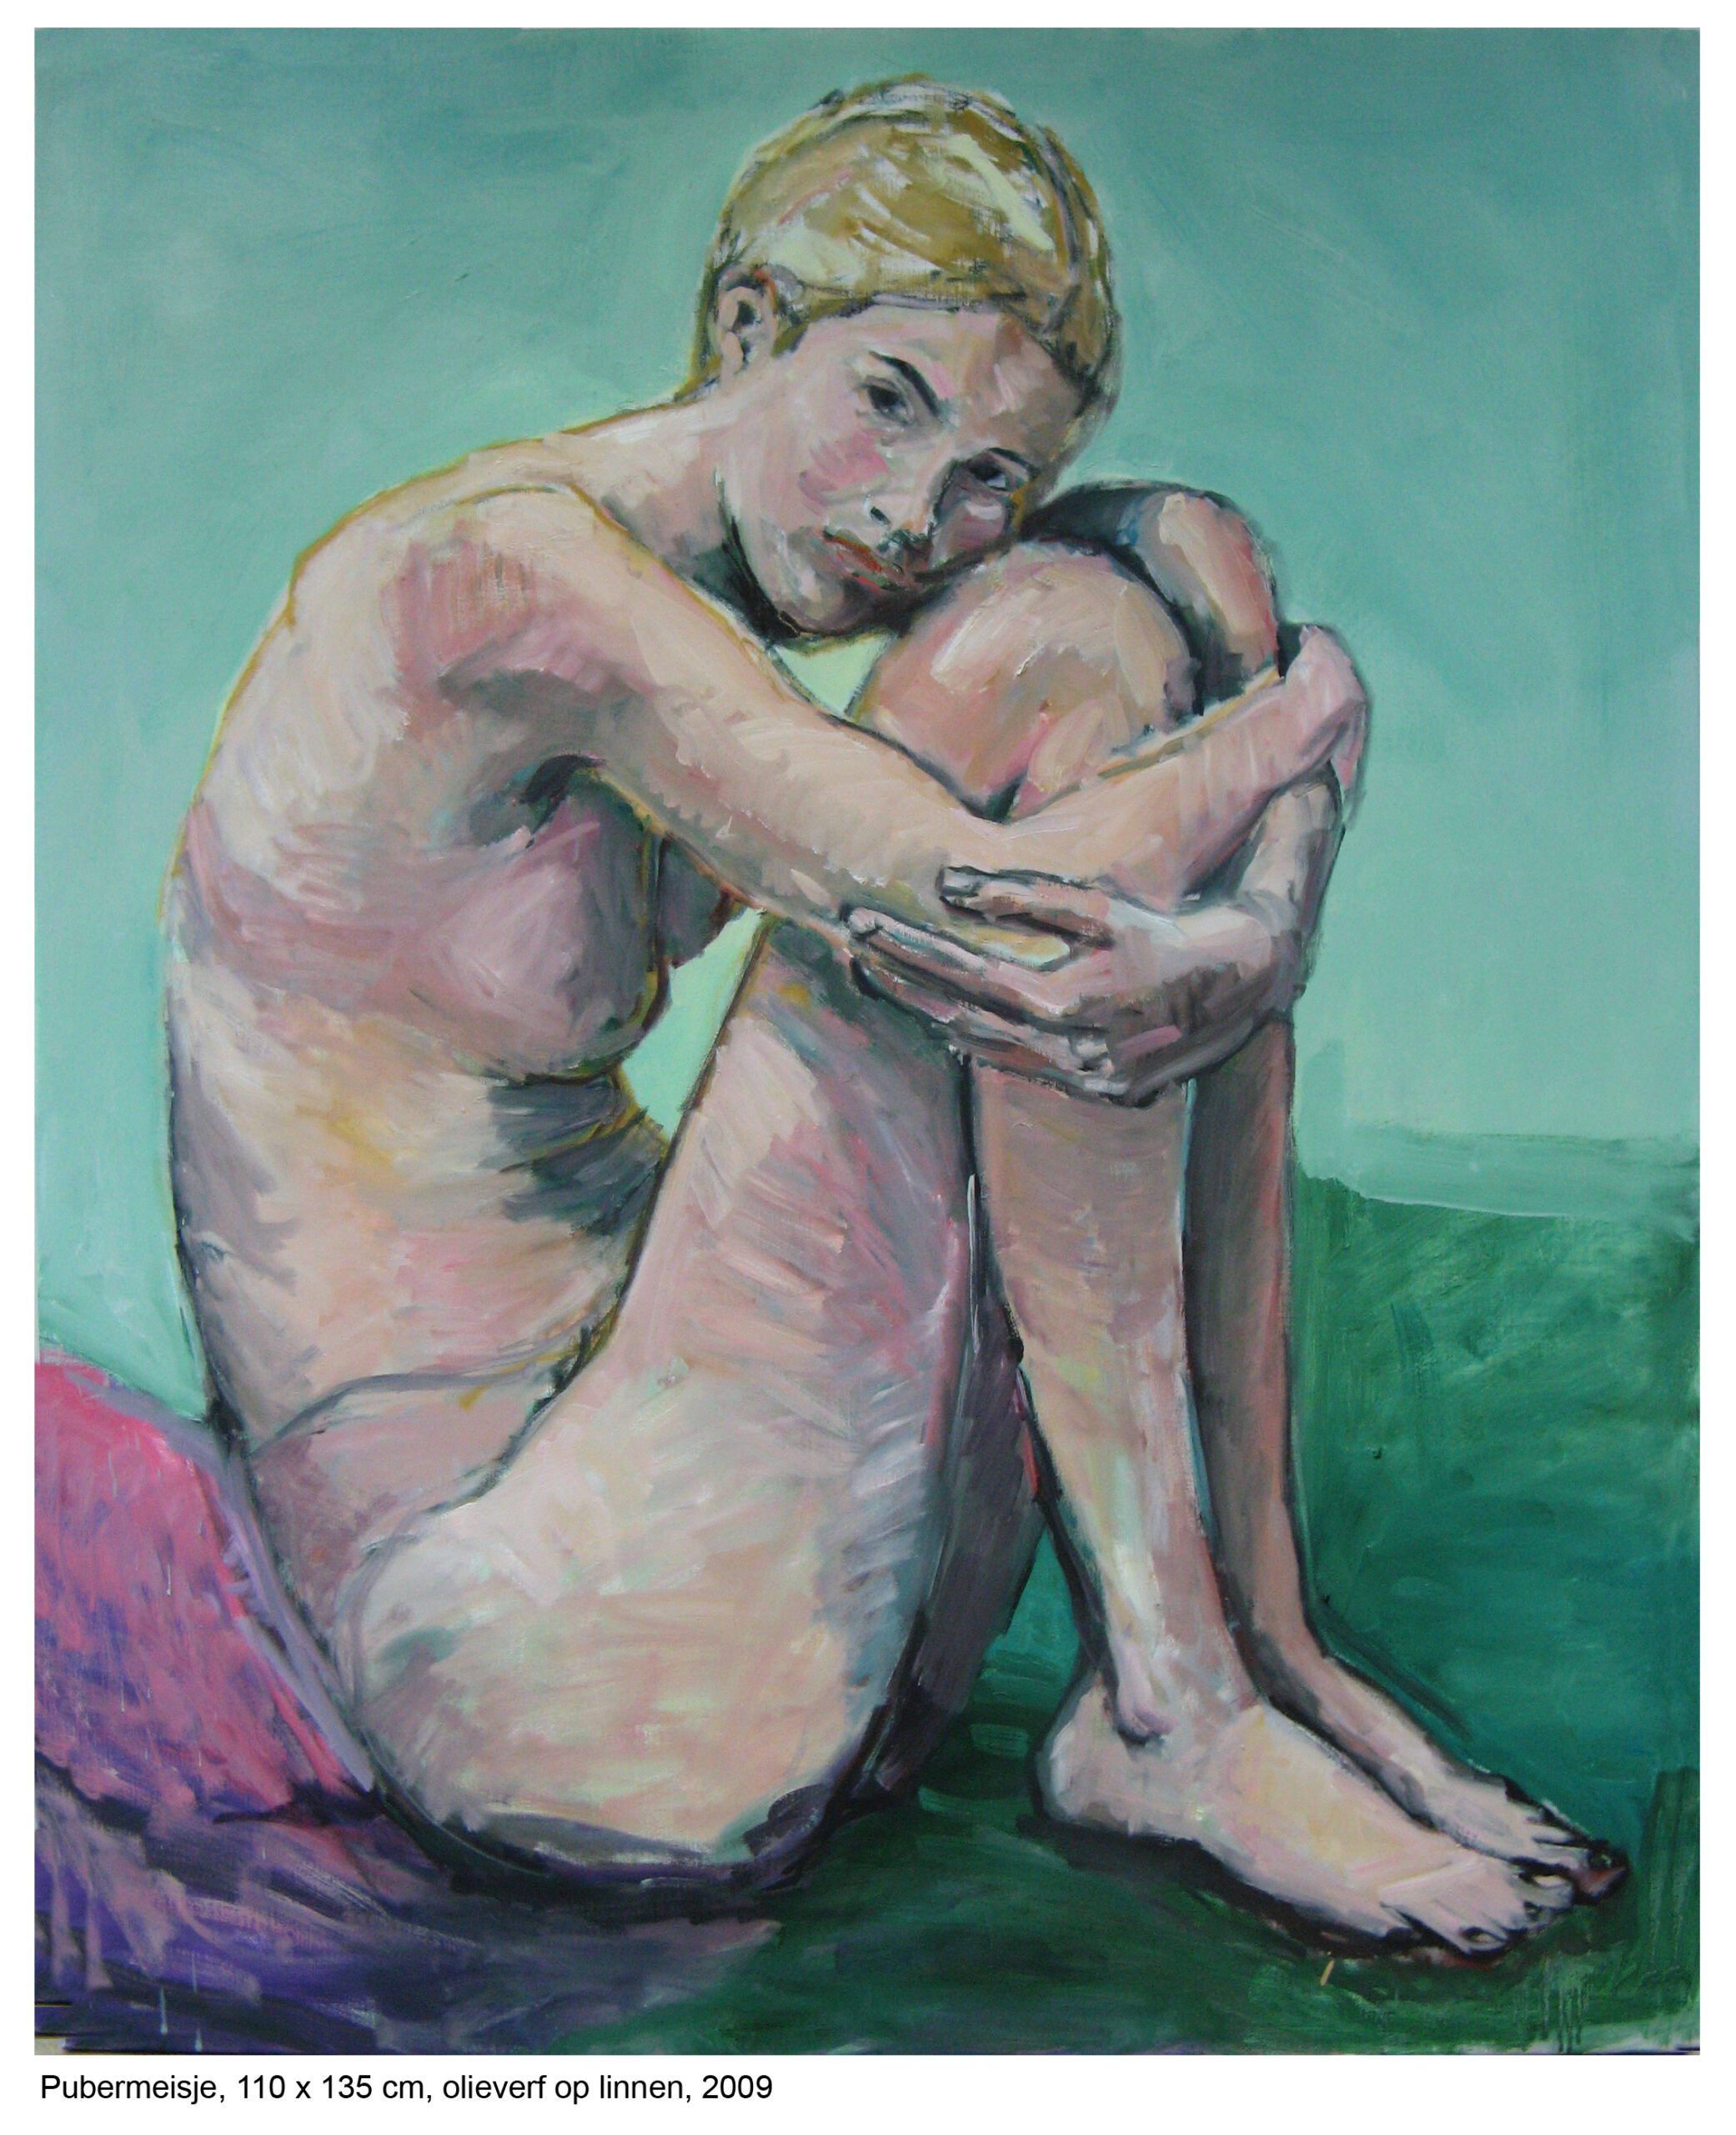 Pubermeisje, 110 x 135, olieverf op linnen, 2009